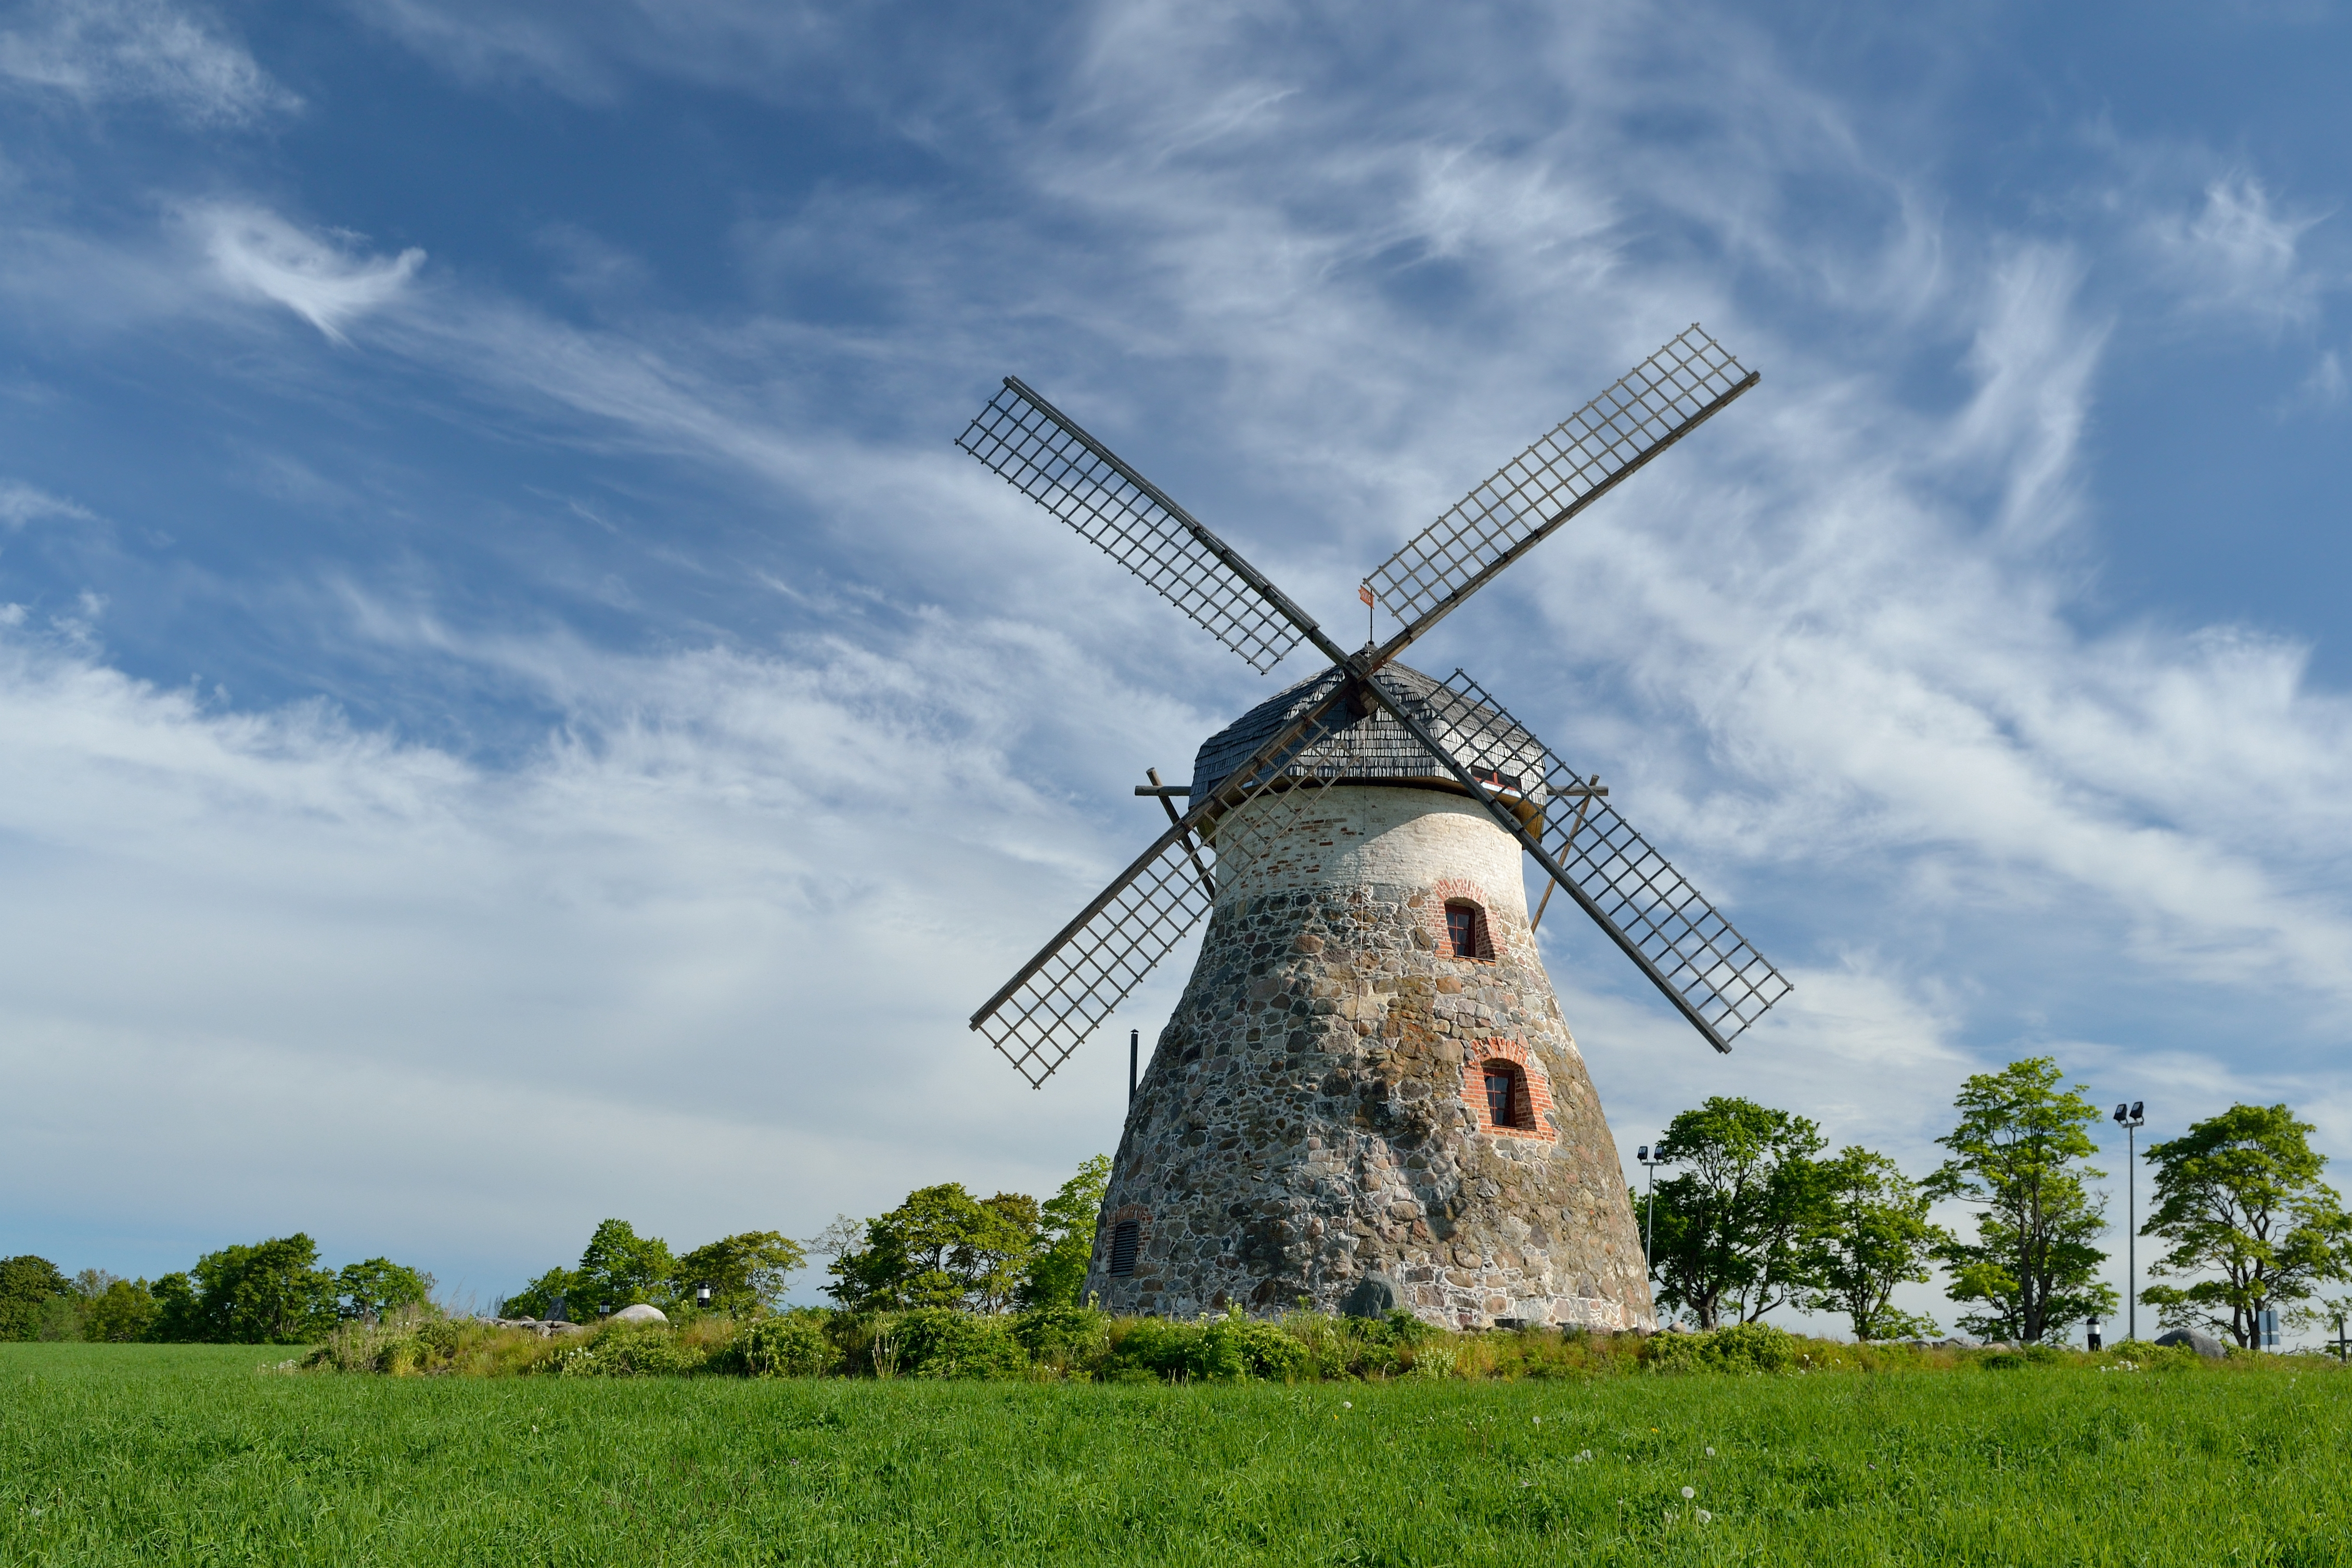 Windmill - Wikipedia